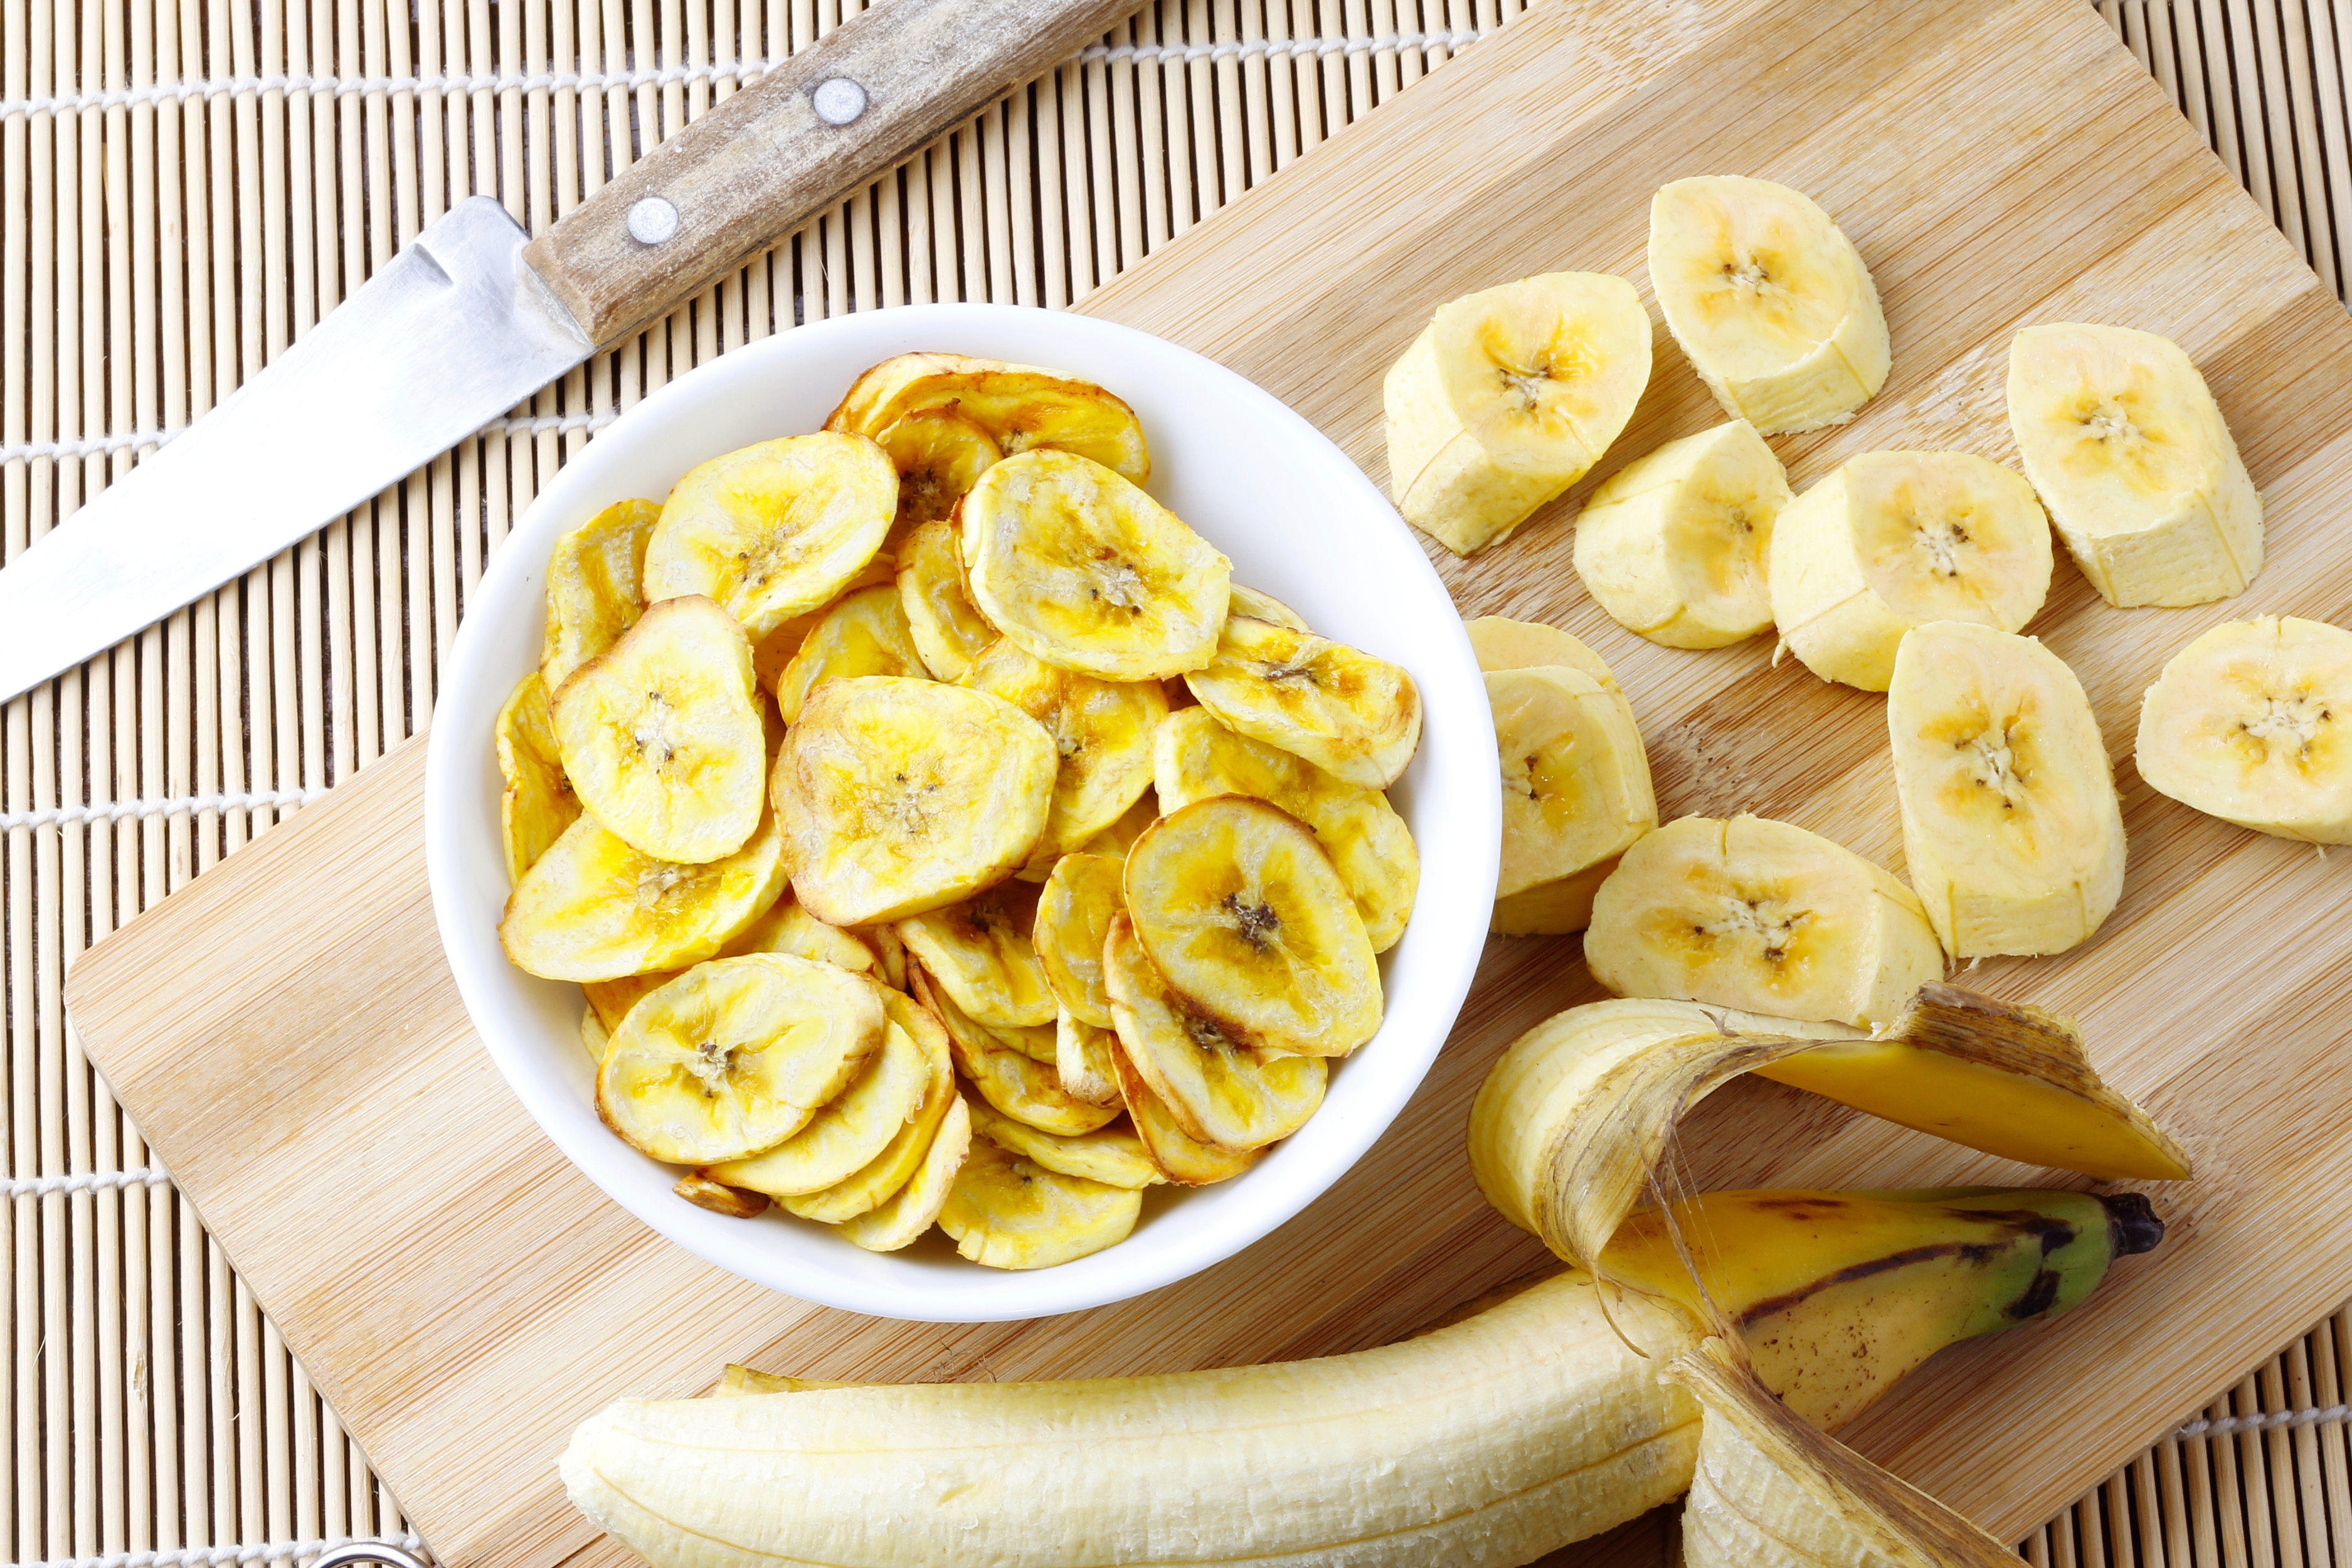 Μπορείς να απολαύσεις chips μπανάνας ακόμα κι αν κάνεις διατροφή - Δες πώς